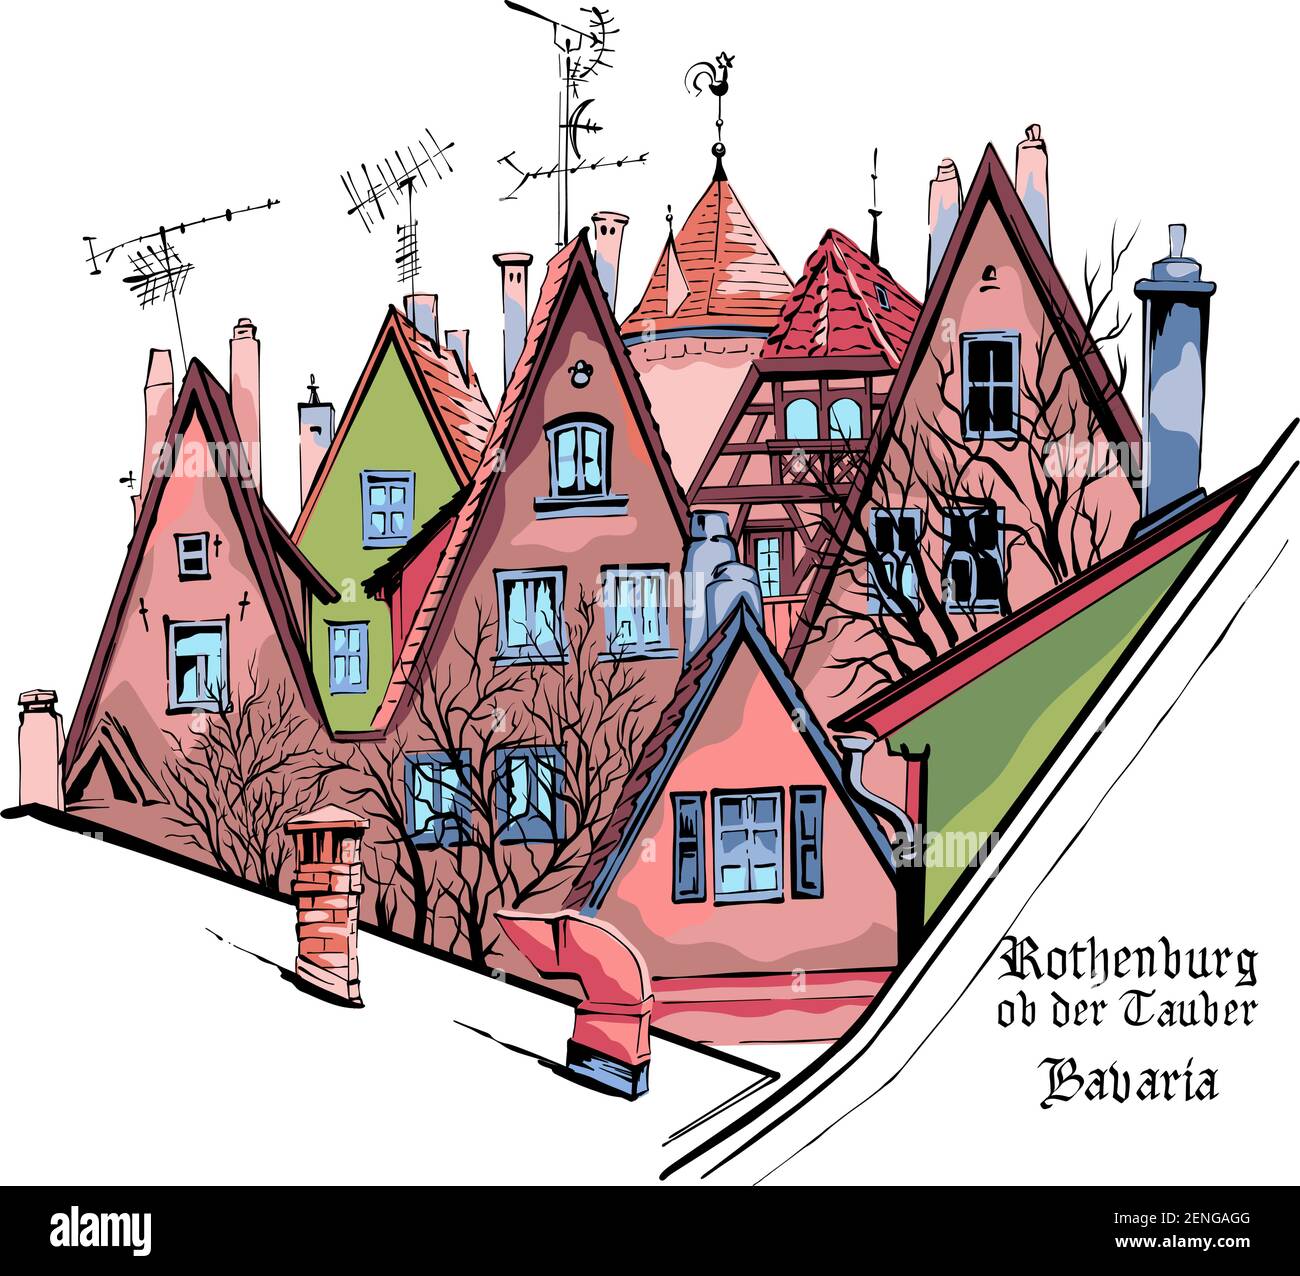 Vektor-Farbskizze von malerischen Fassaden und Dächern der mittelalterlichen Altstadt, Rothenburg ob der Tauber mit Stadtnamen, Bayern, Deutschland Stock Vektor